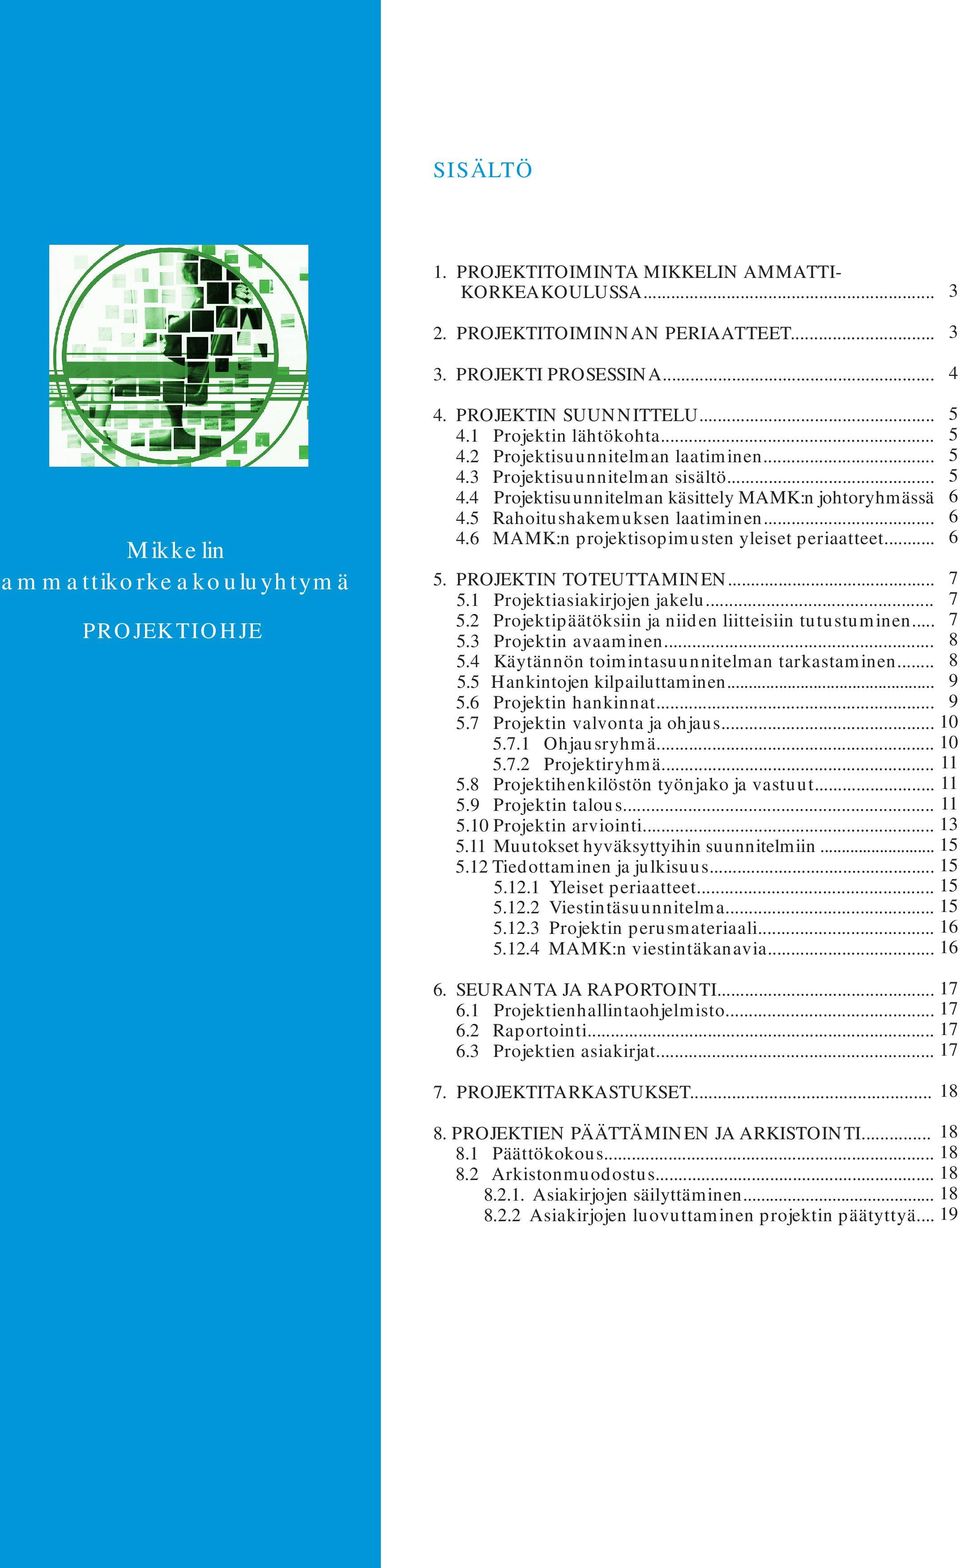 5 Rahoitushakemuksen laatiminen... 4.6 MAMK:n projektisopimusten yleiset periaatteet... 5. PROJEKTIN TOTEUTTAMINEN... 5.1 Projektiasiakirjojen jakelu... 5.2 Projektipäätöksiin ja niiden liitteisiin tutustuminen.